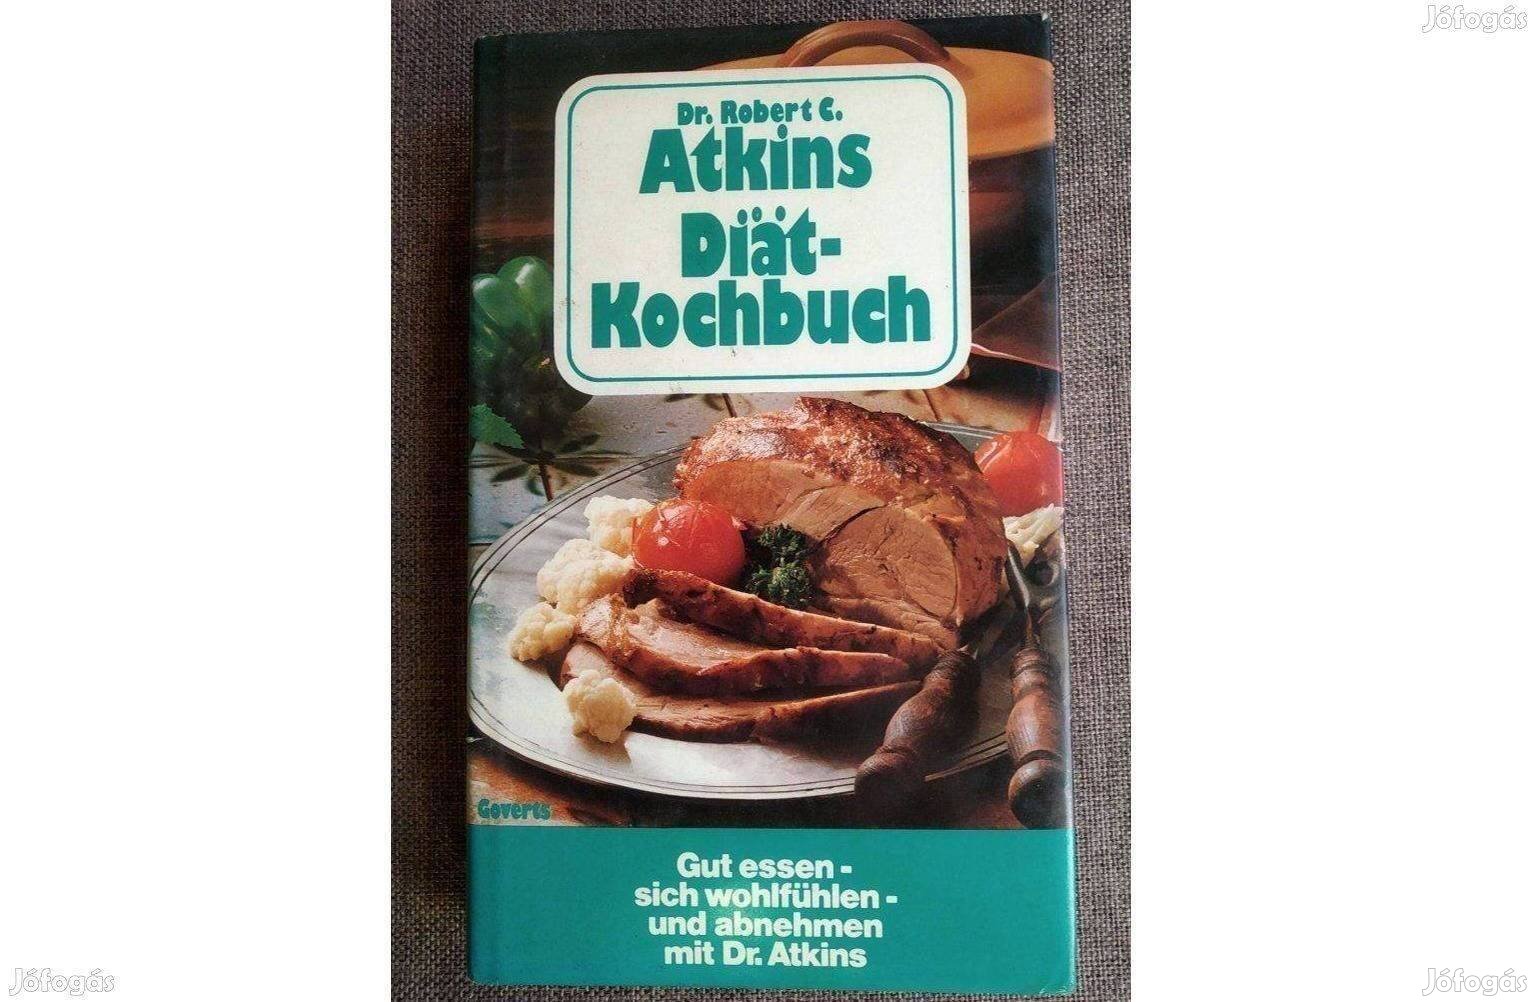 Atkins Diät Kochbuch